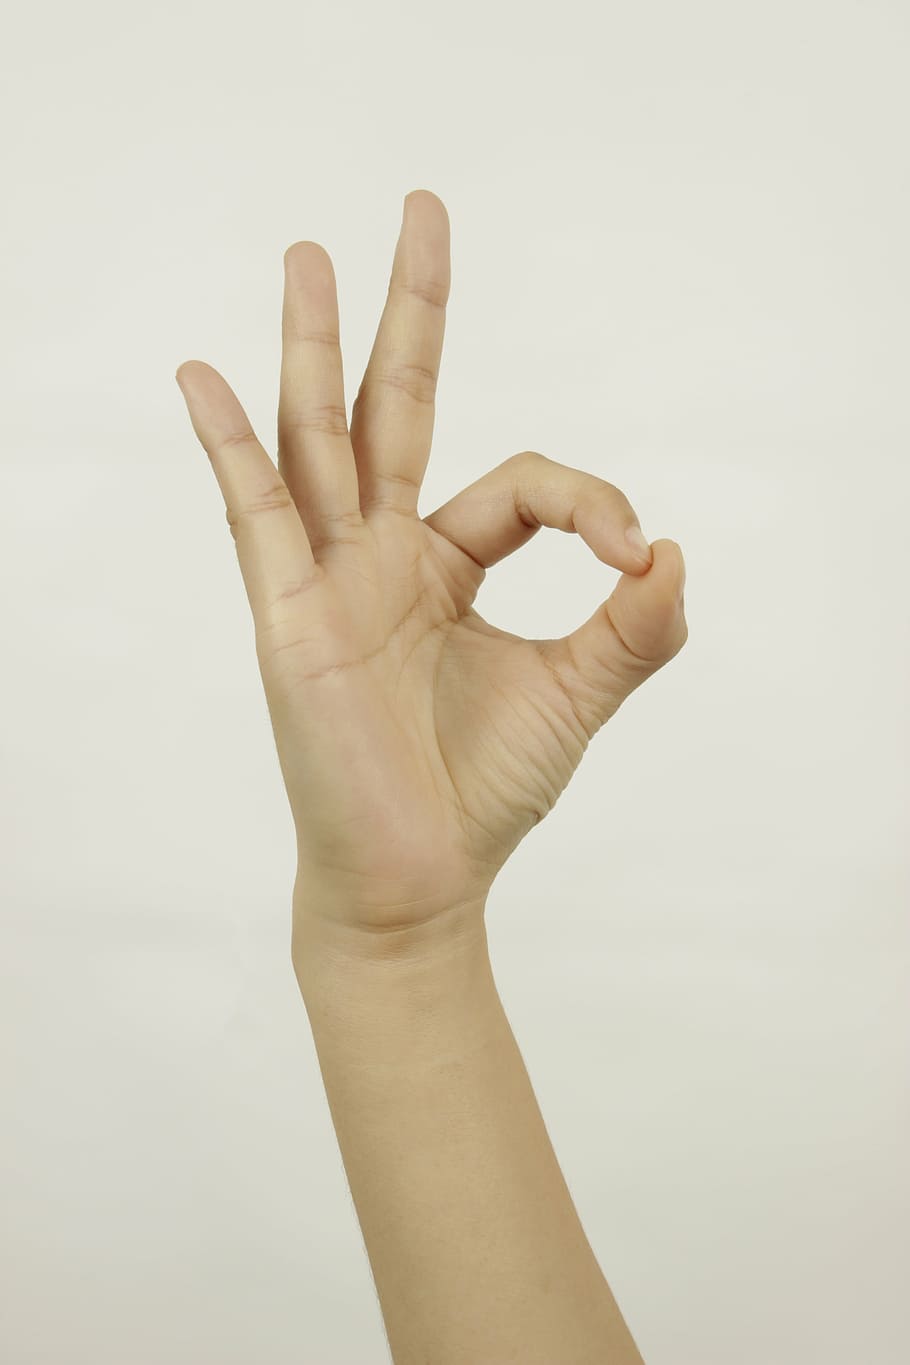 pessoa, mostrando, ok gesto com a mão, mão, dedo, o gesto, humano Mão, gesticulando, dedo humano, pessoas